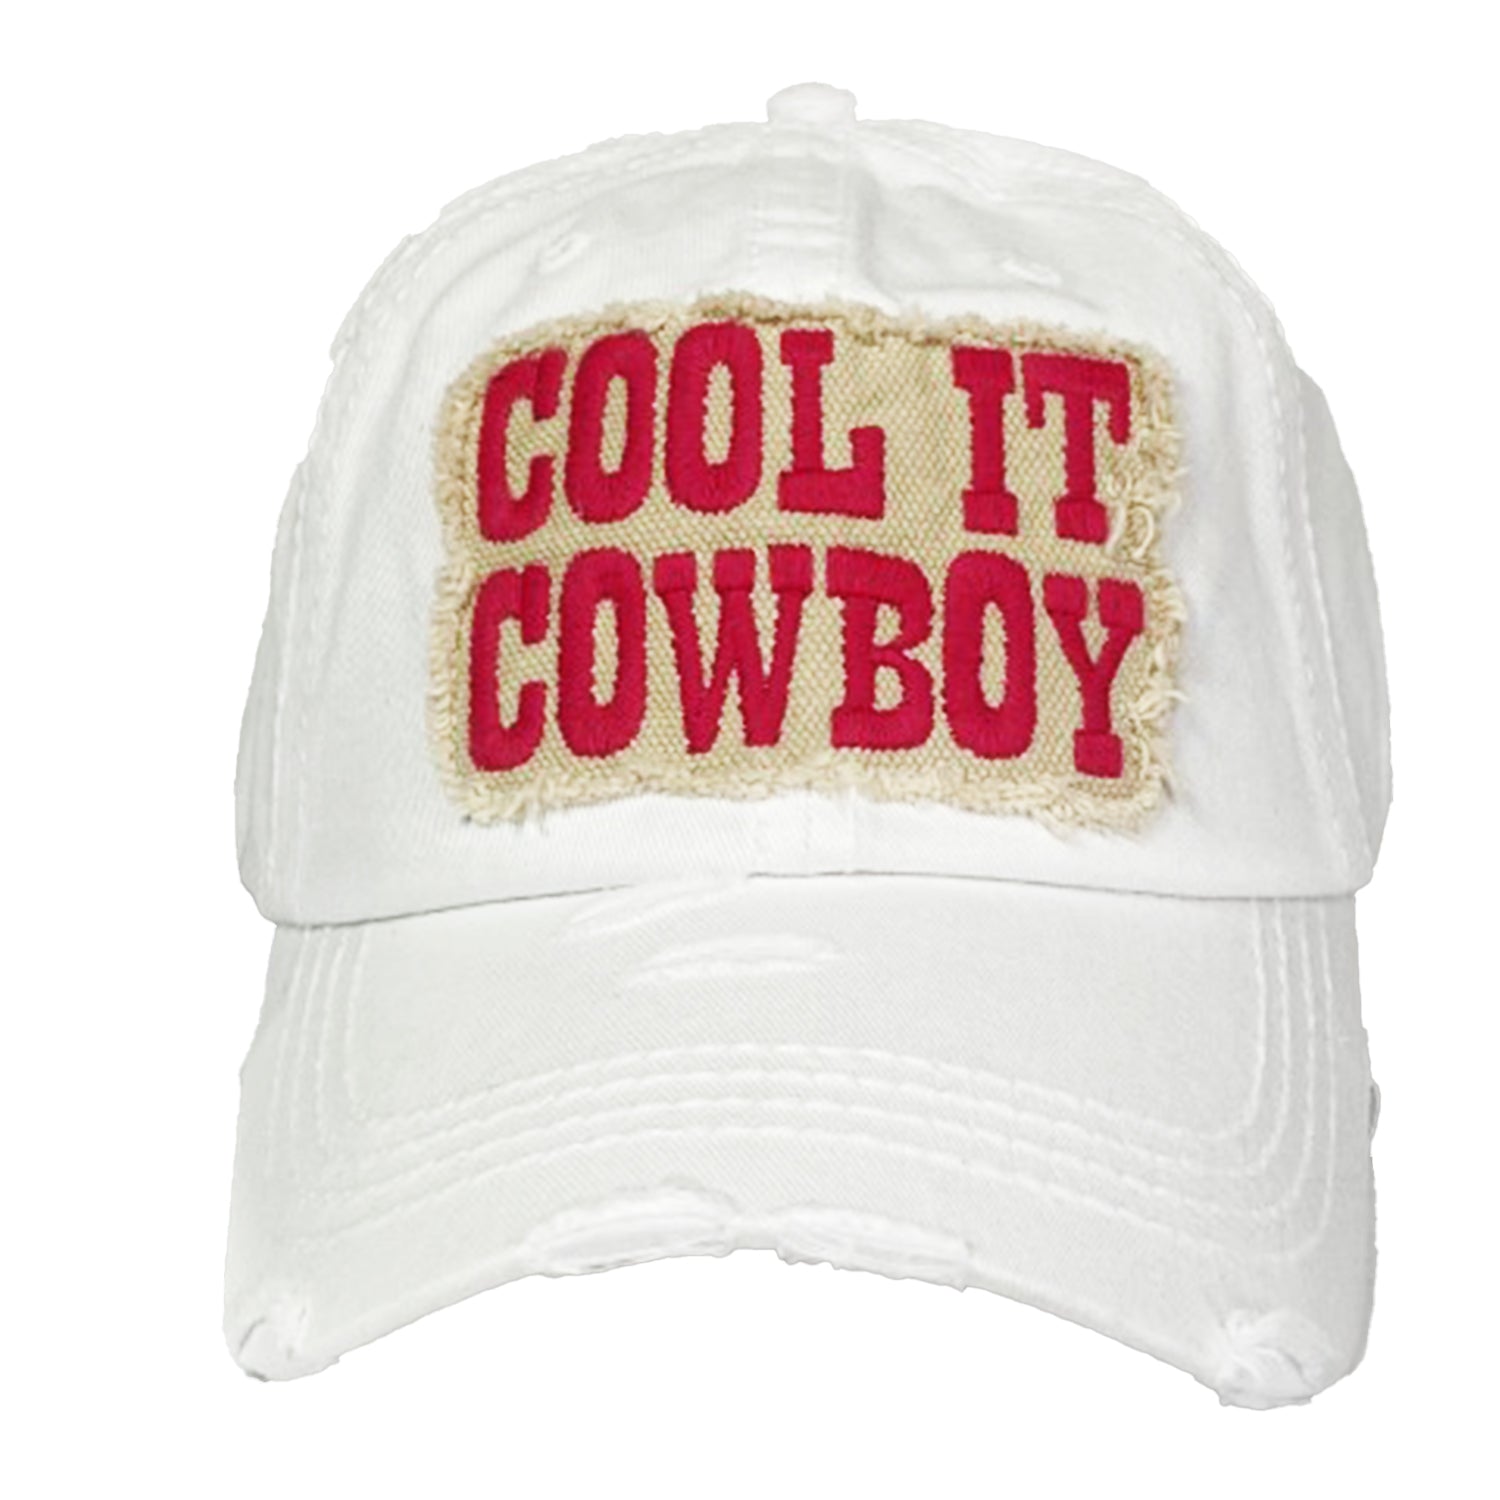 KBV-2001 Cool It CowboyWhite